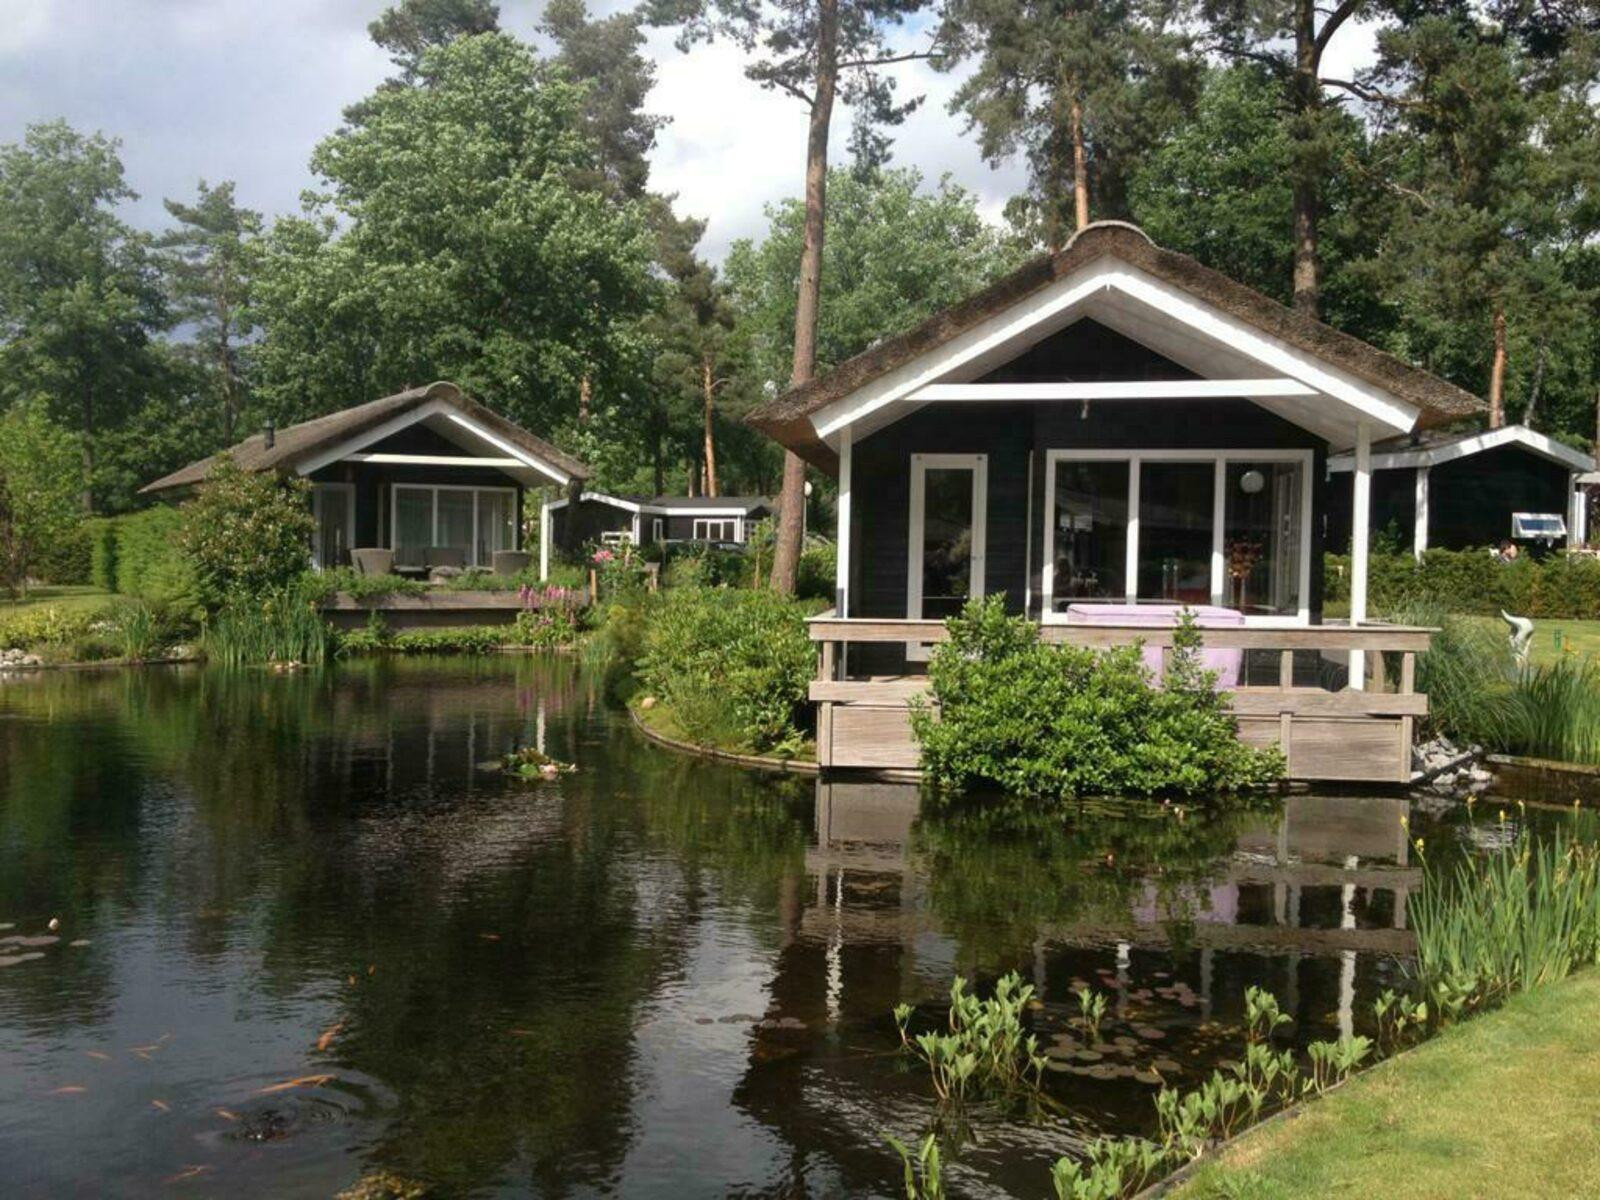 Heerlijkehuisjes.nl Luxe 4 persoons Lodge op een familiepark nabij Markelo - Twente - Nederland - Europa - Markelo